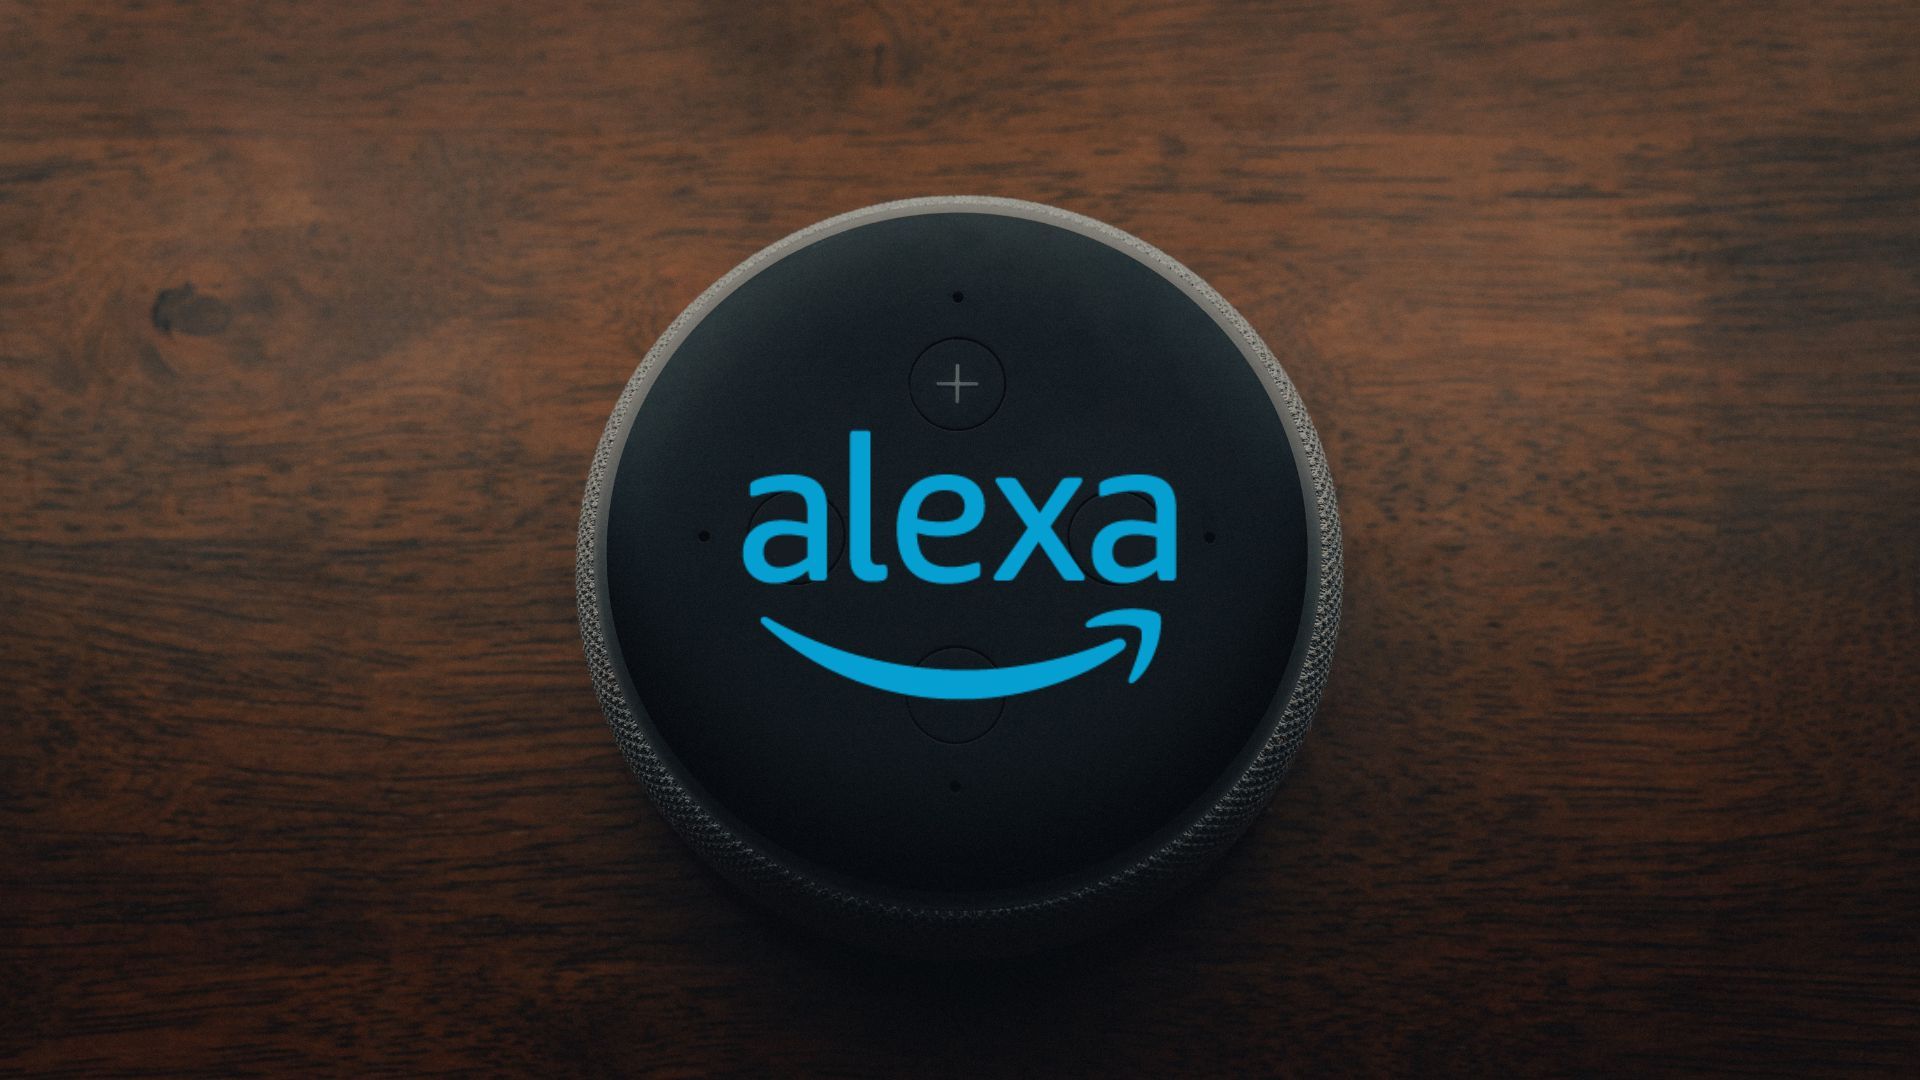 Um alto-falante inteligente em uma mesa de madeira.  O logotipo Alexa está iluminado na parte superior do alto-falante.